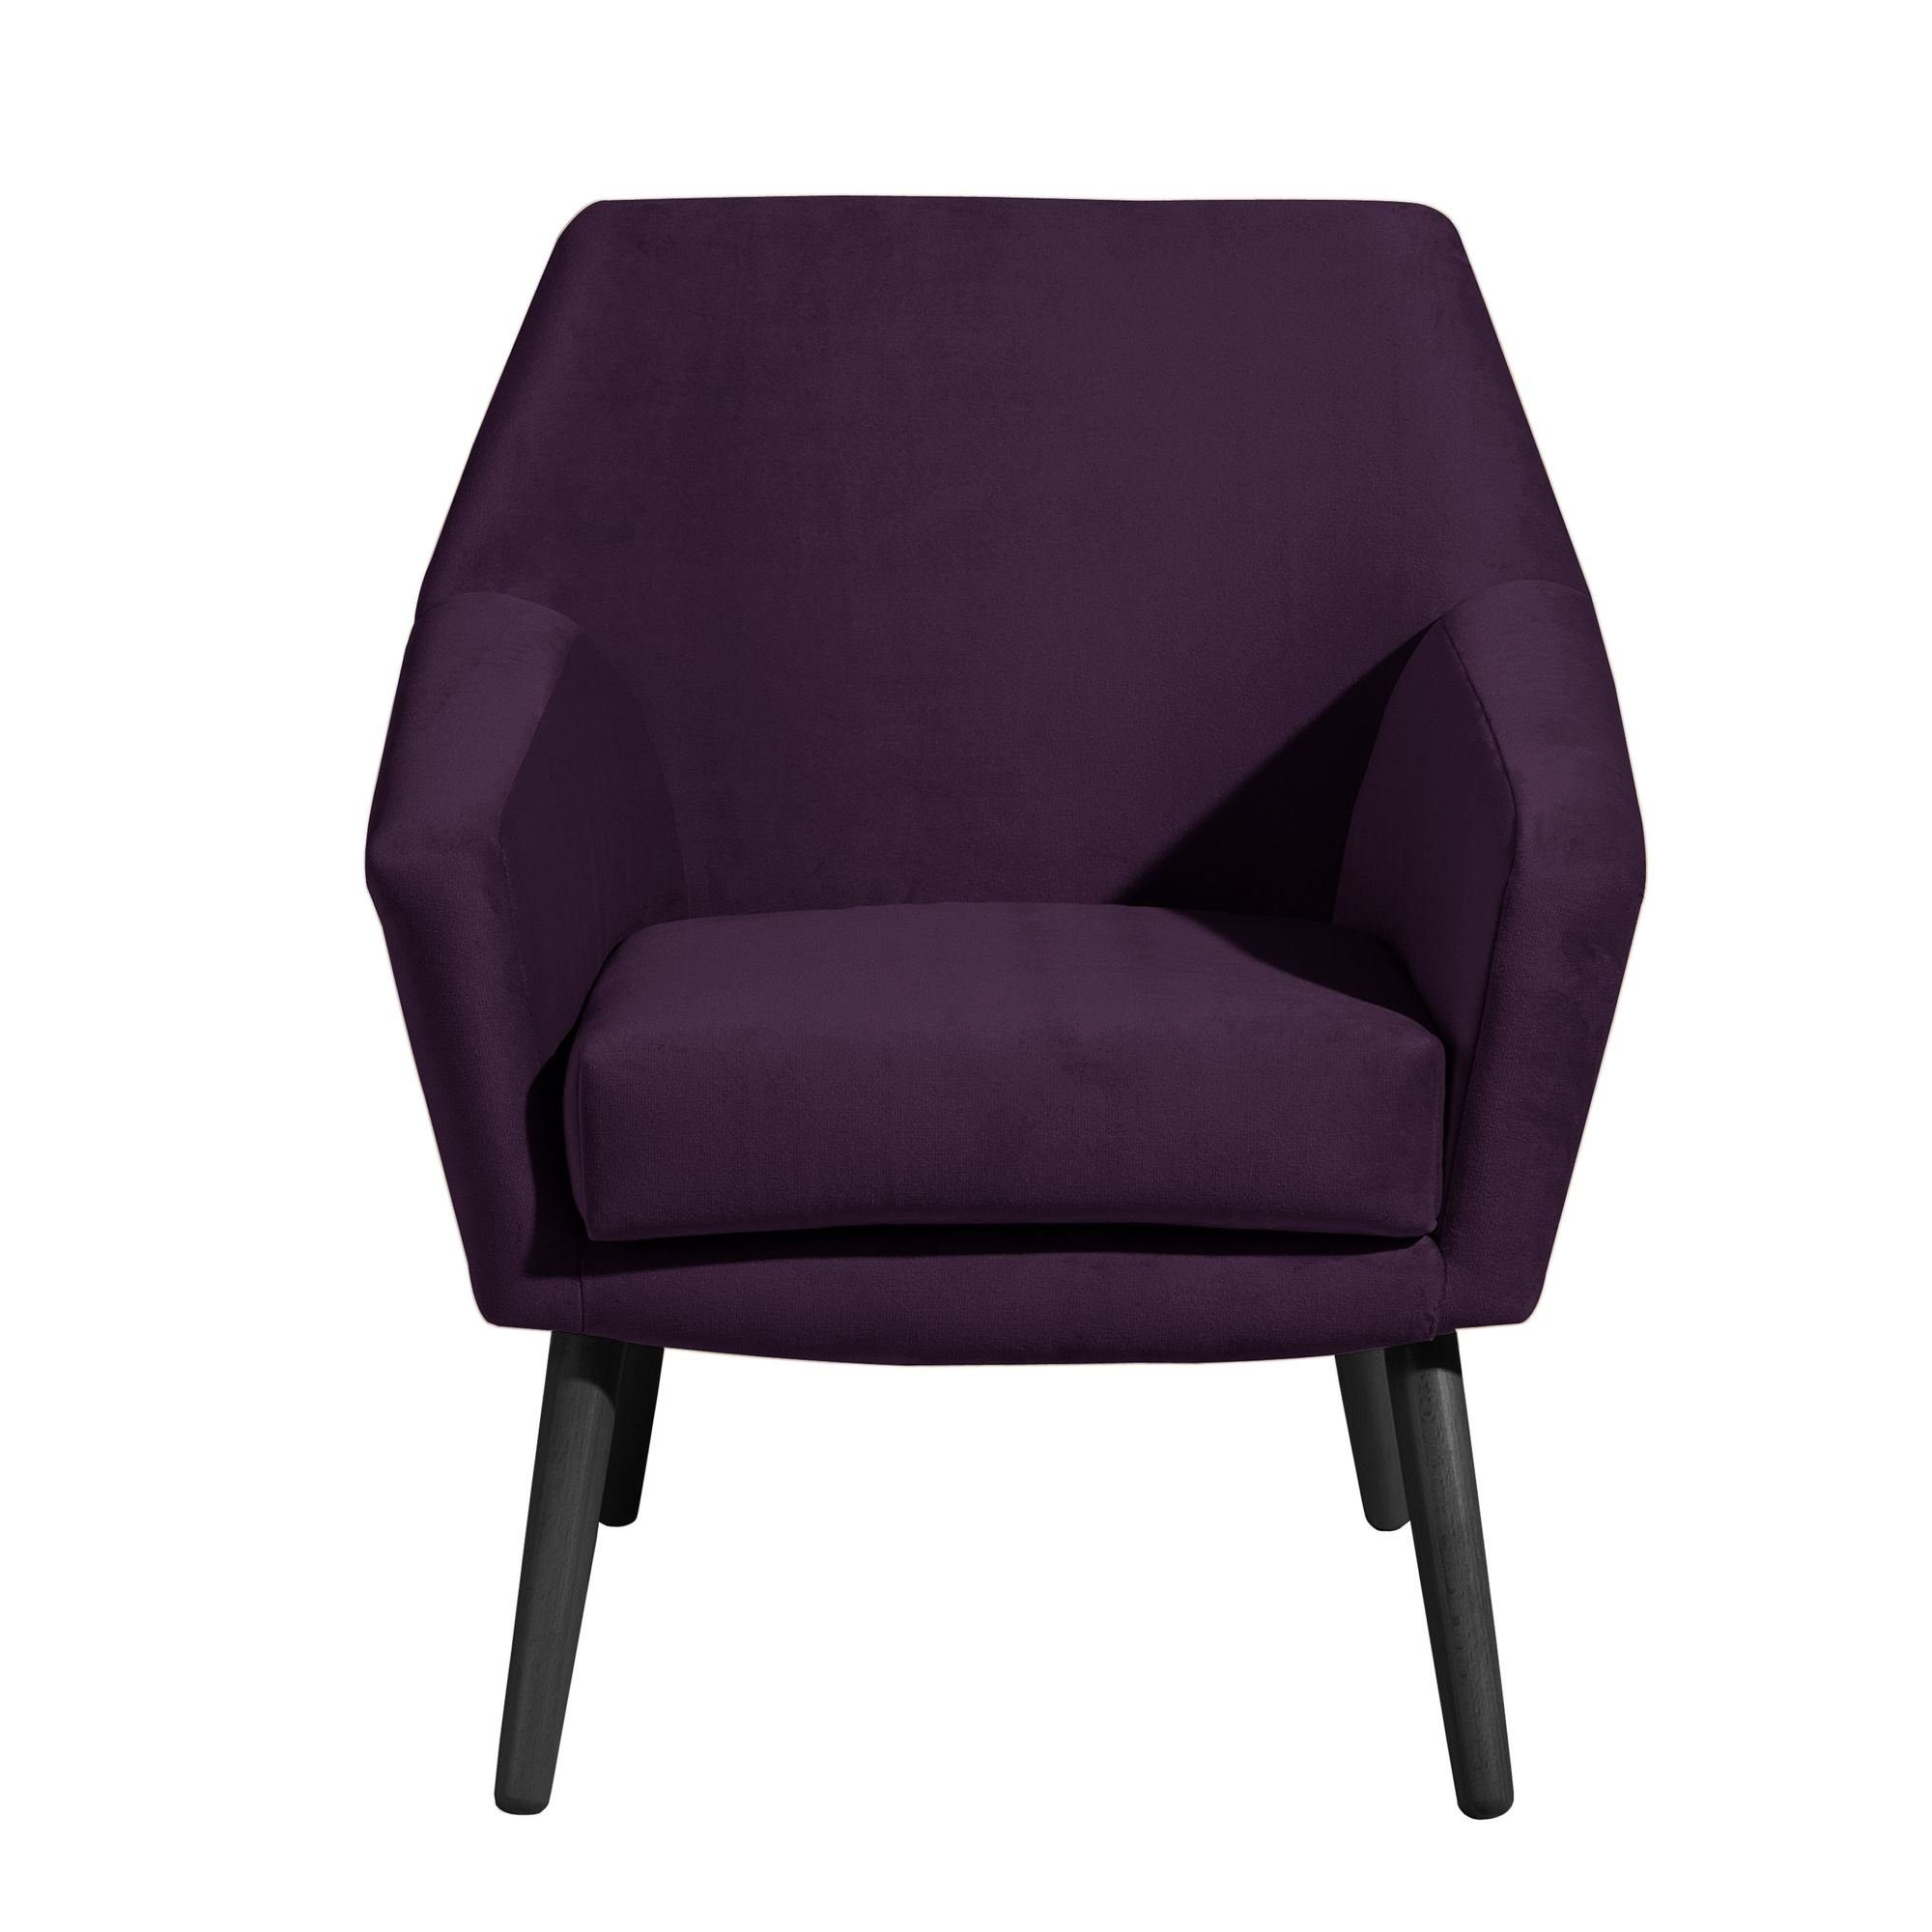 aufm 1-St), / Buche Bezug Sessel (Sparpreis inkl. Kostenlosem 21067 58 Kessel hochwertig schwarz purple Kachka verarbeitet,bequemer Samtvelour Sitz Versand, Sessel